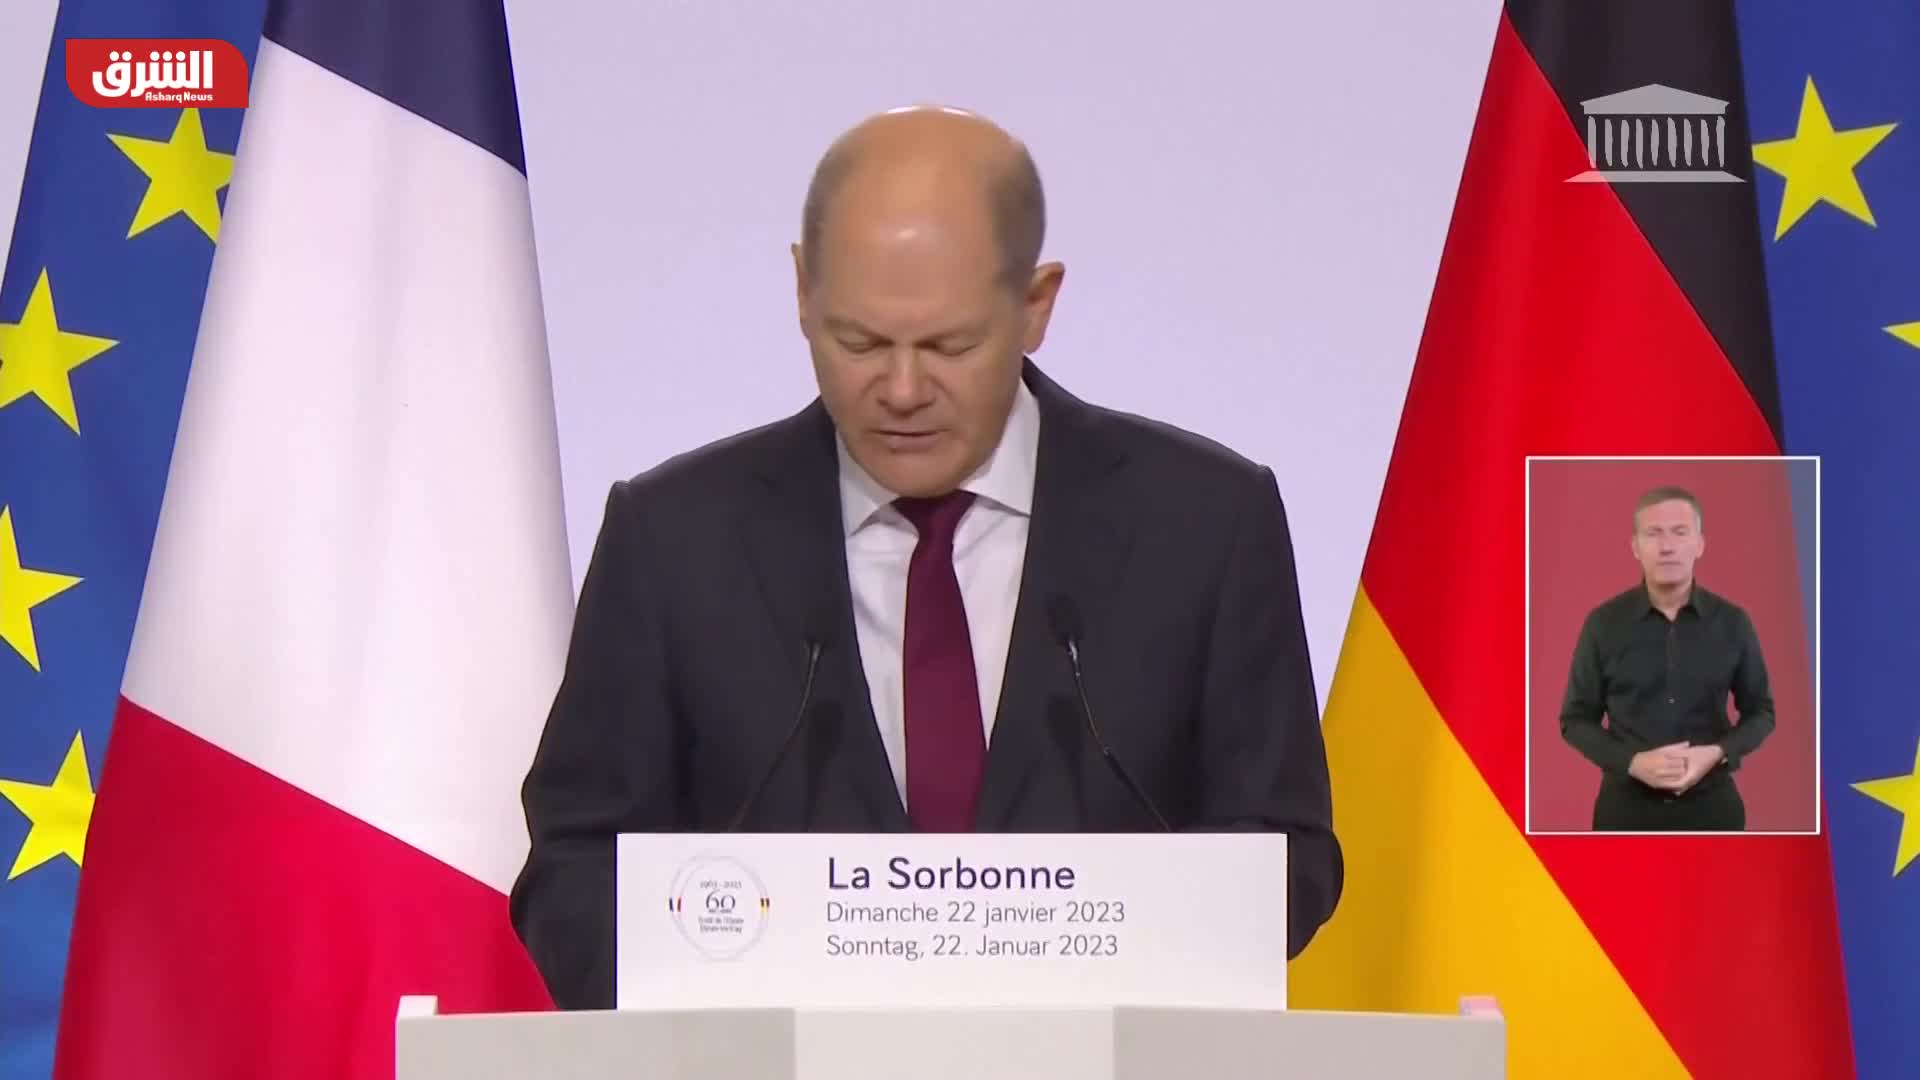 شولتز: مستقبل أوروبا يعتمد على المحرك الفرنسي-الألماني لتحويل الخلافات لعمل متطابق